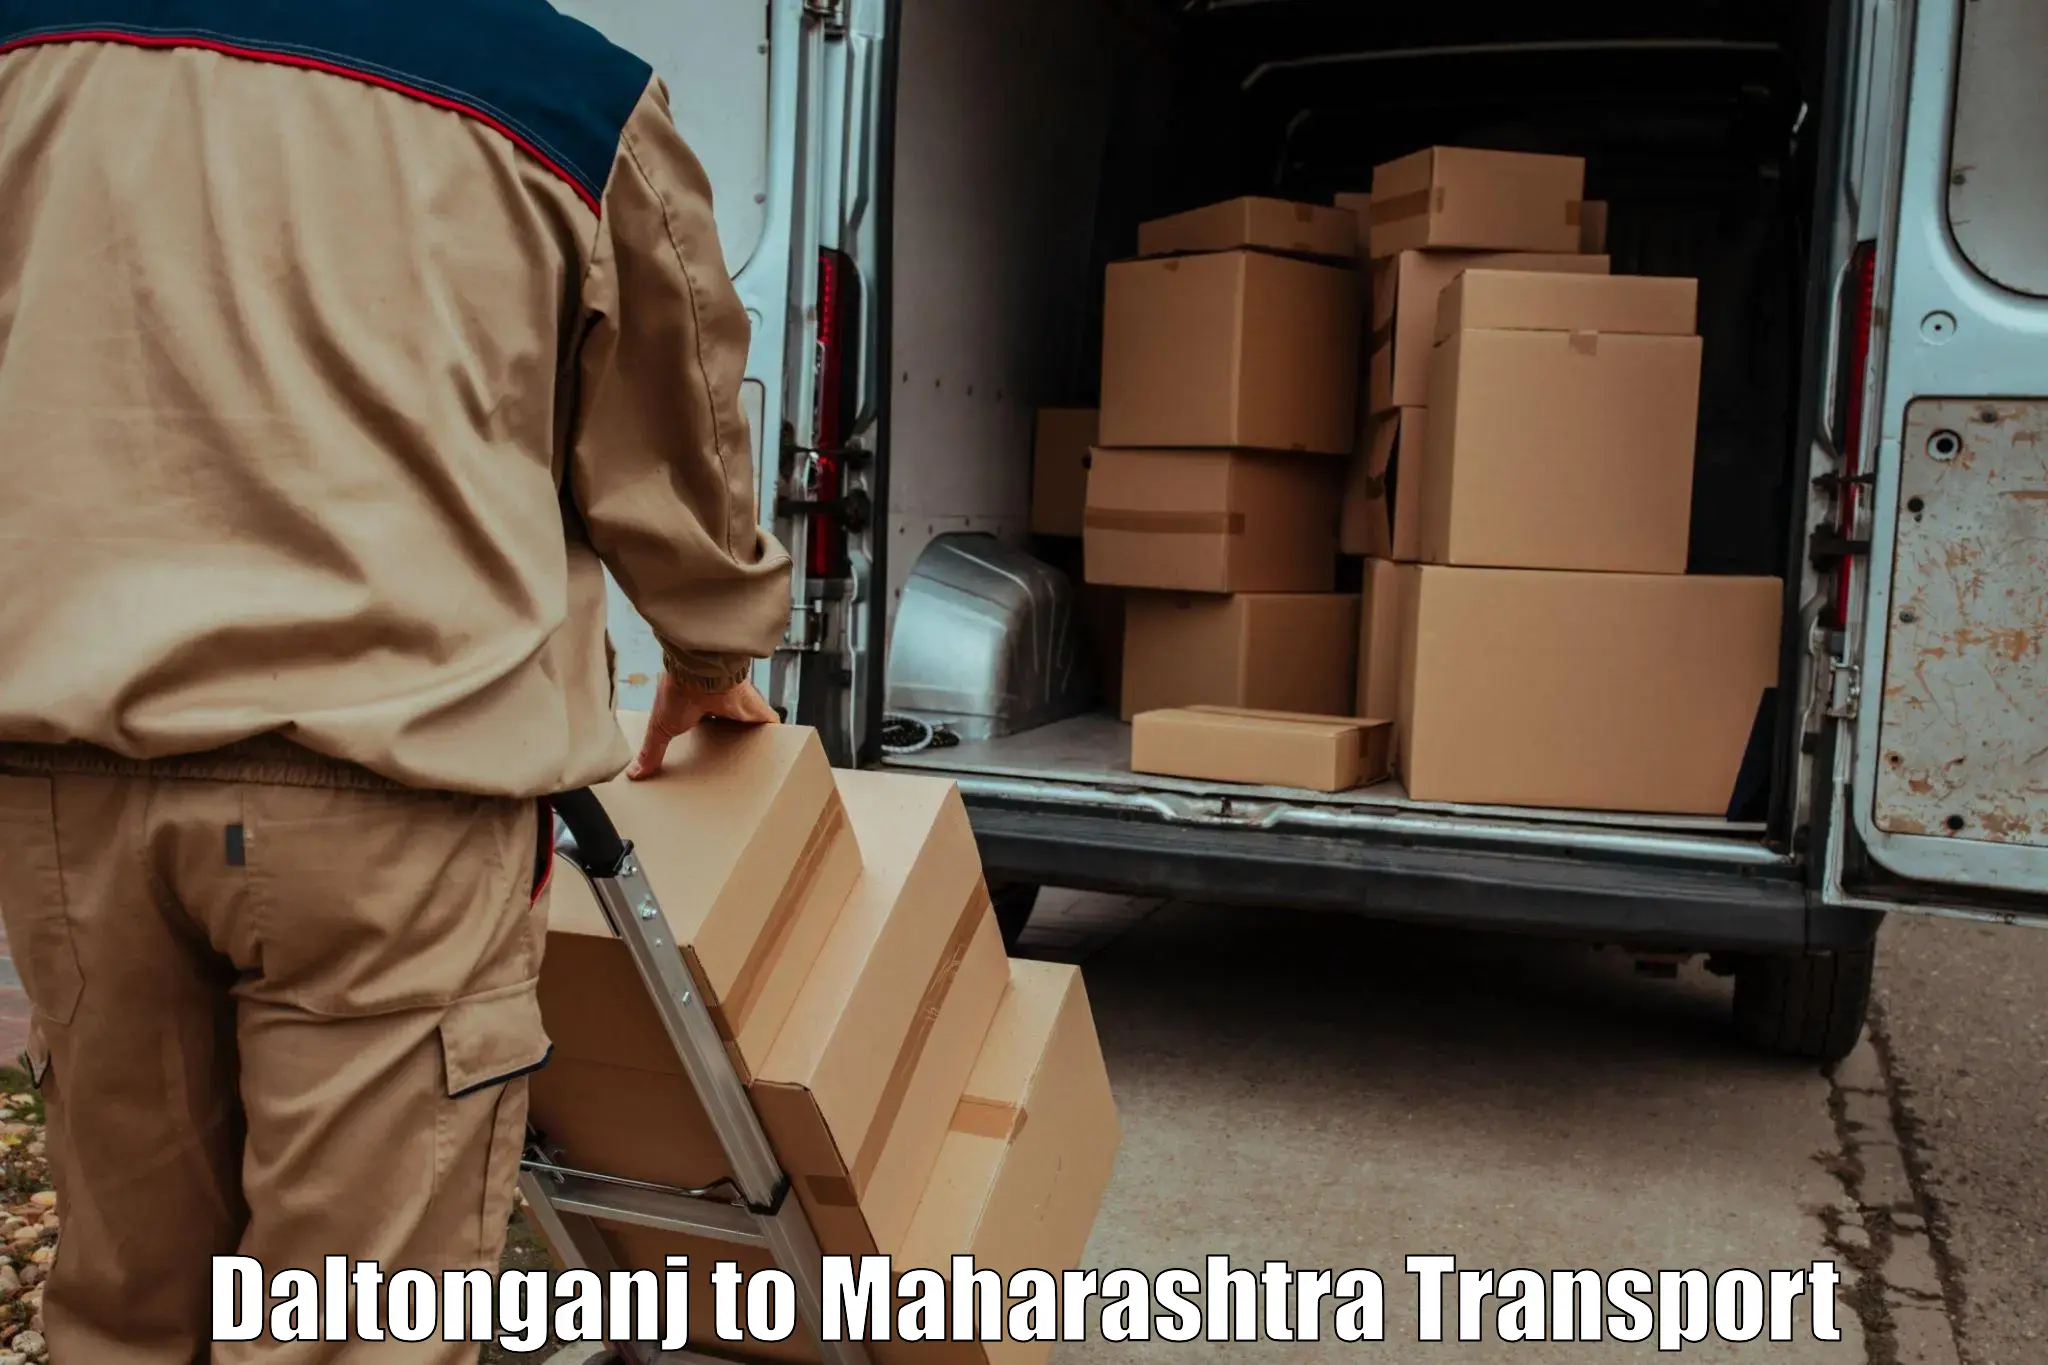 Air freight transport services Daltonganj to Ulhasnagar